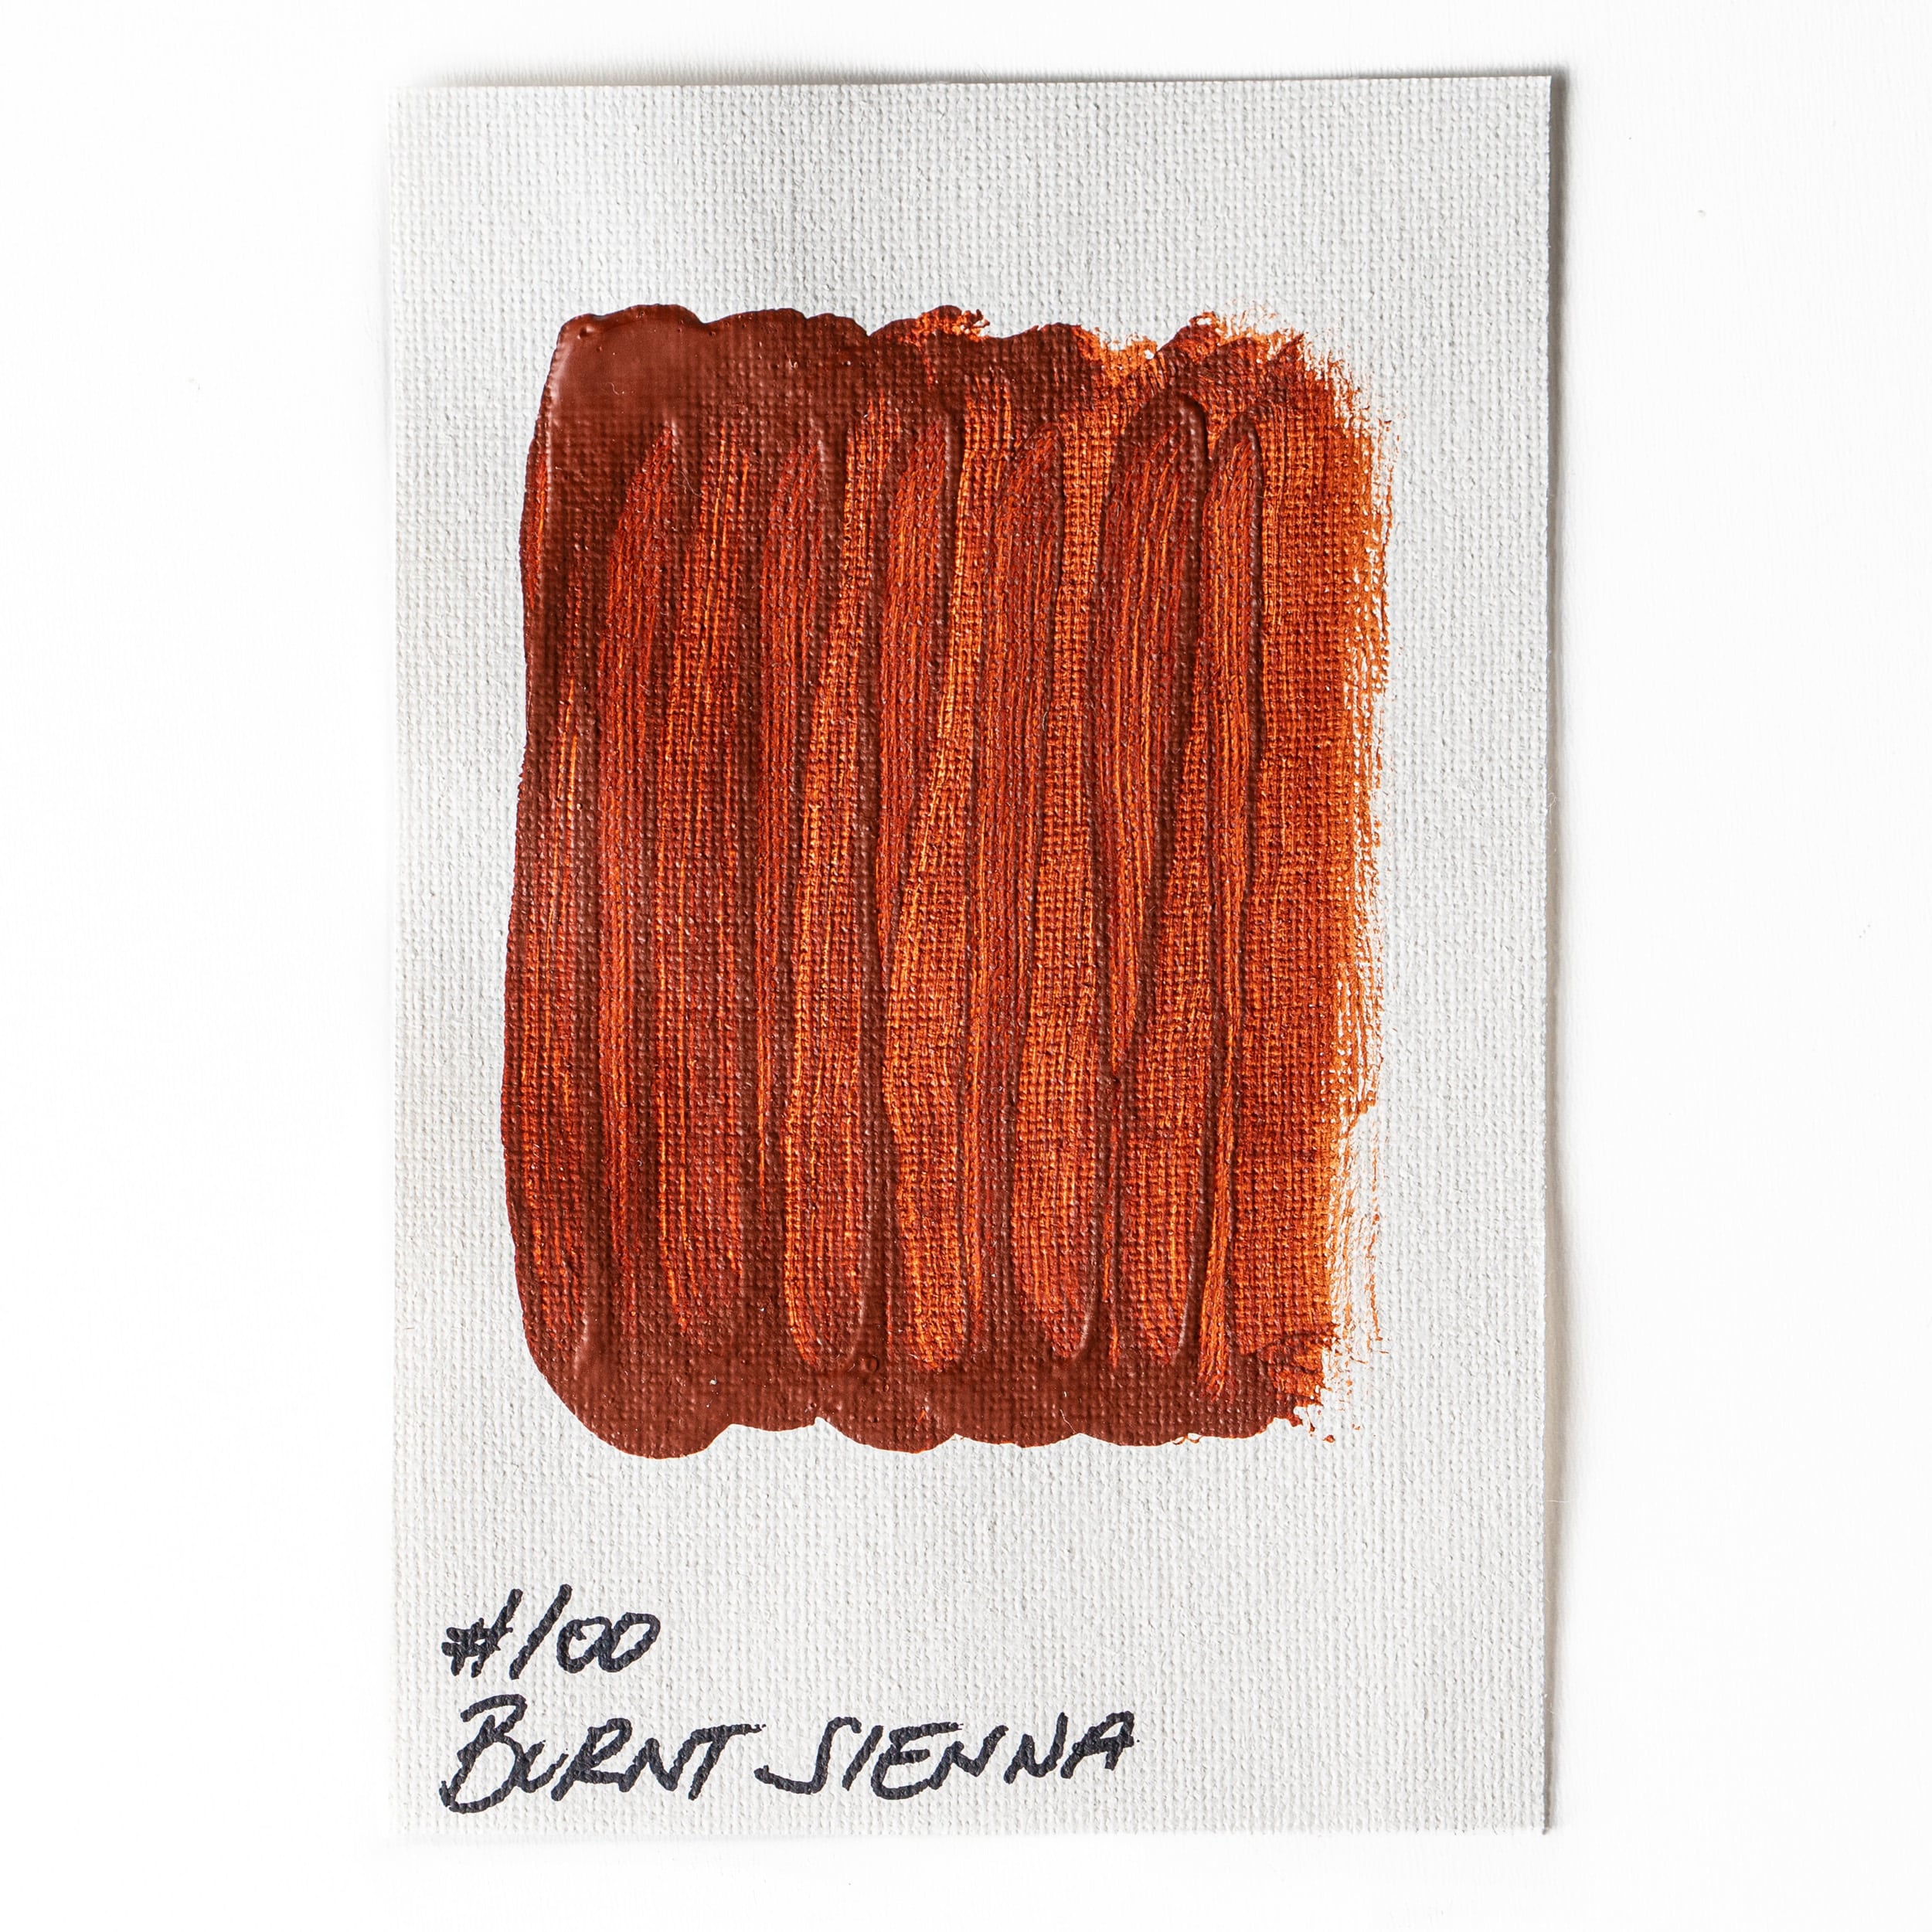 100 Burnt Sienna Acrylic Paint - Lightfast - Opaque